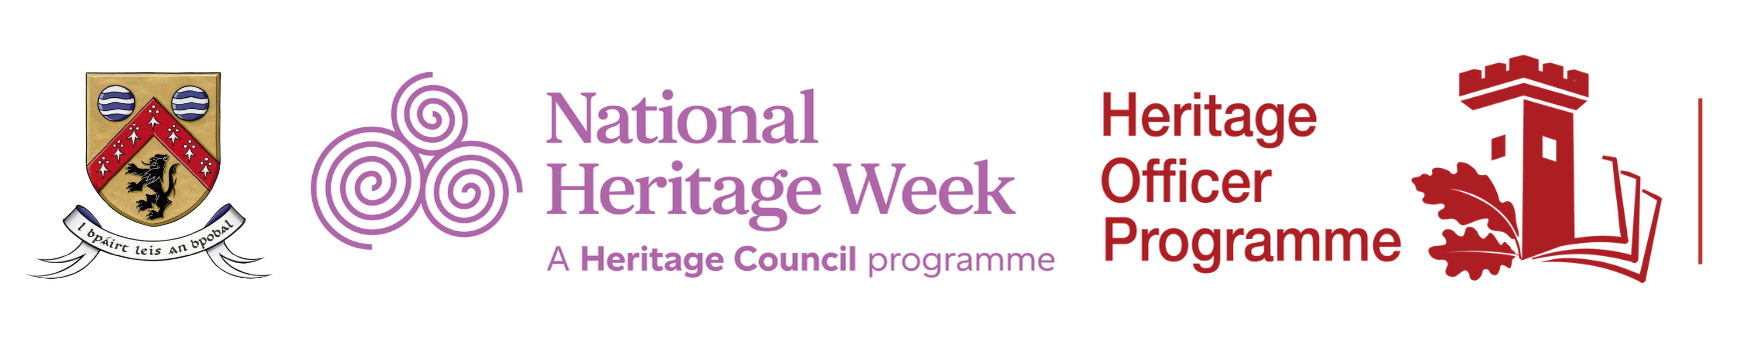 Logos for Heritage Week 1